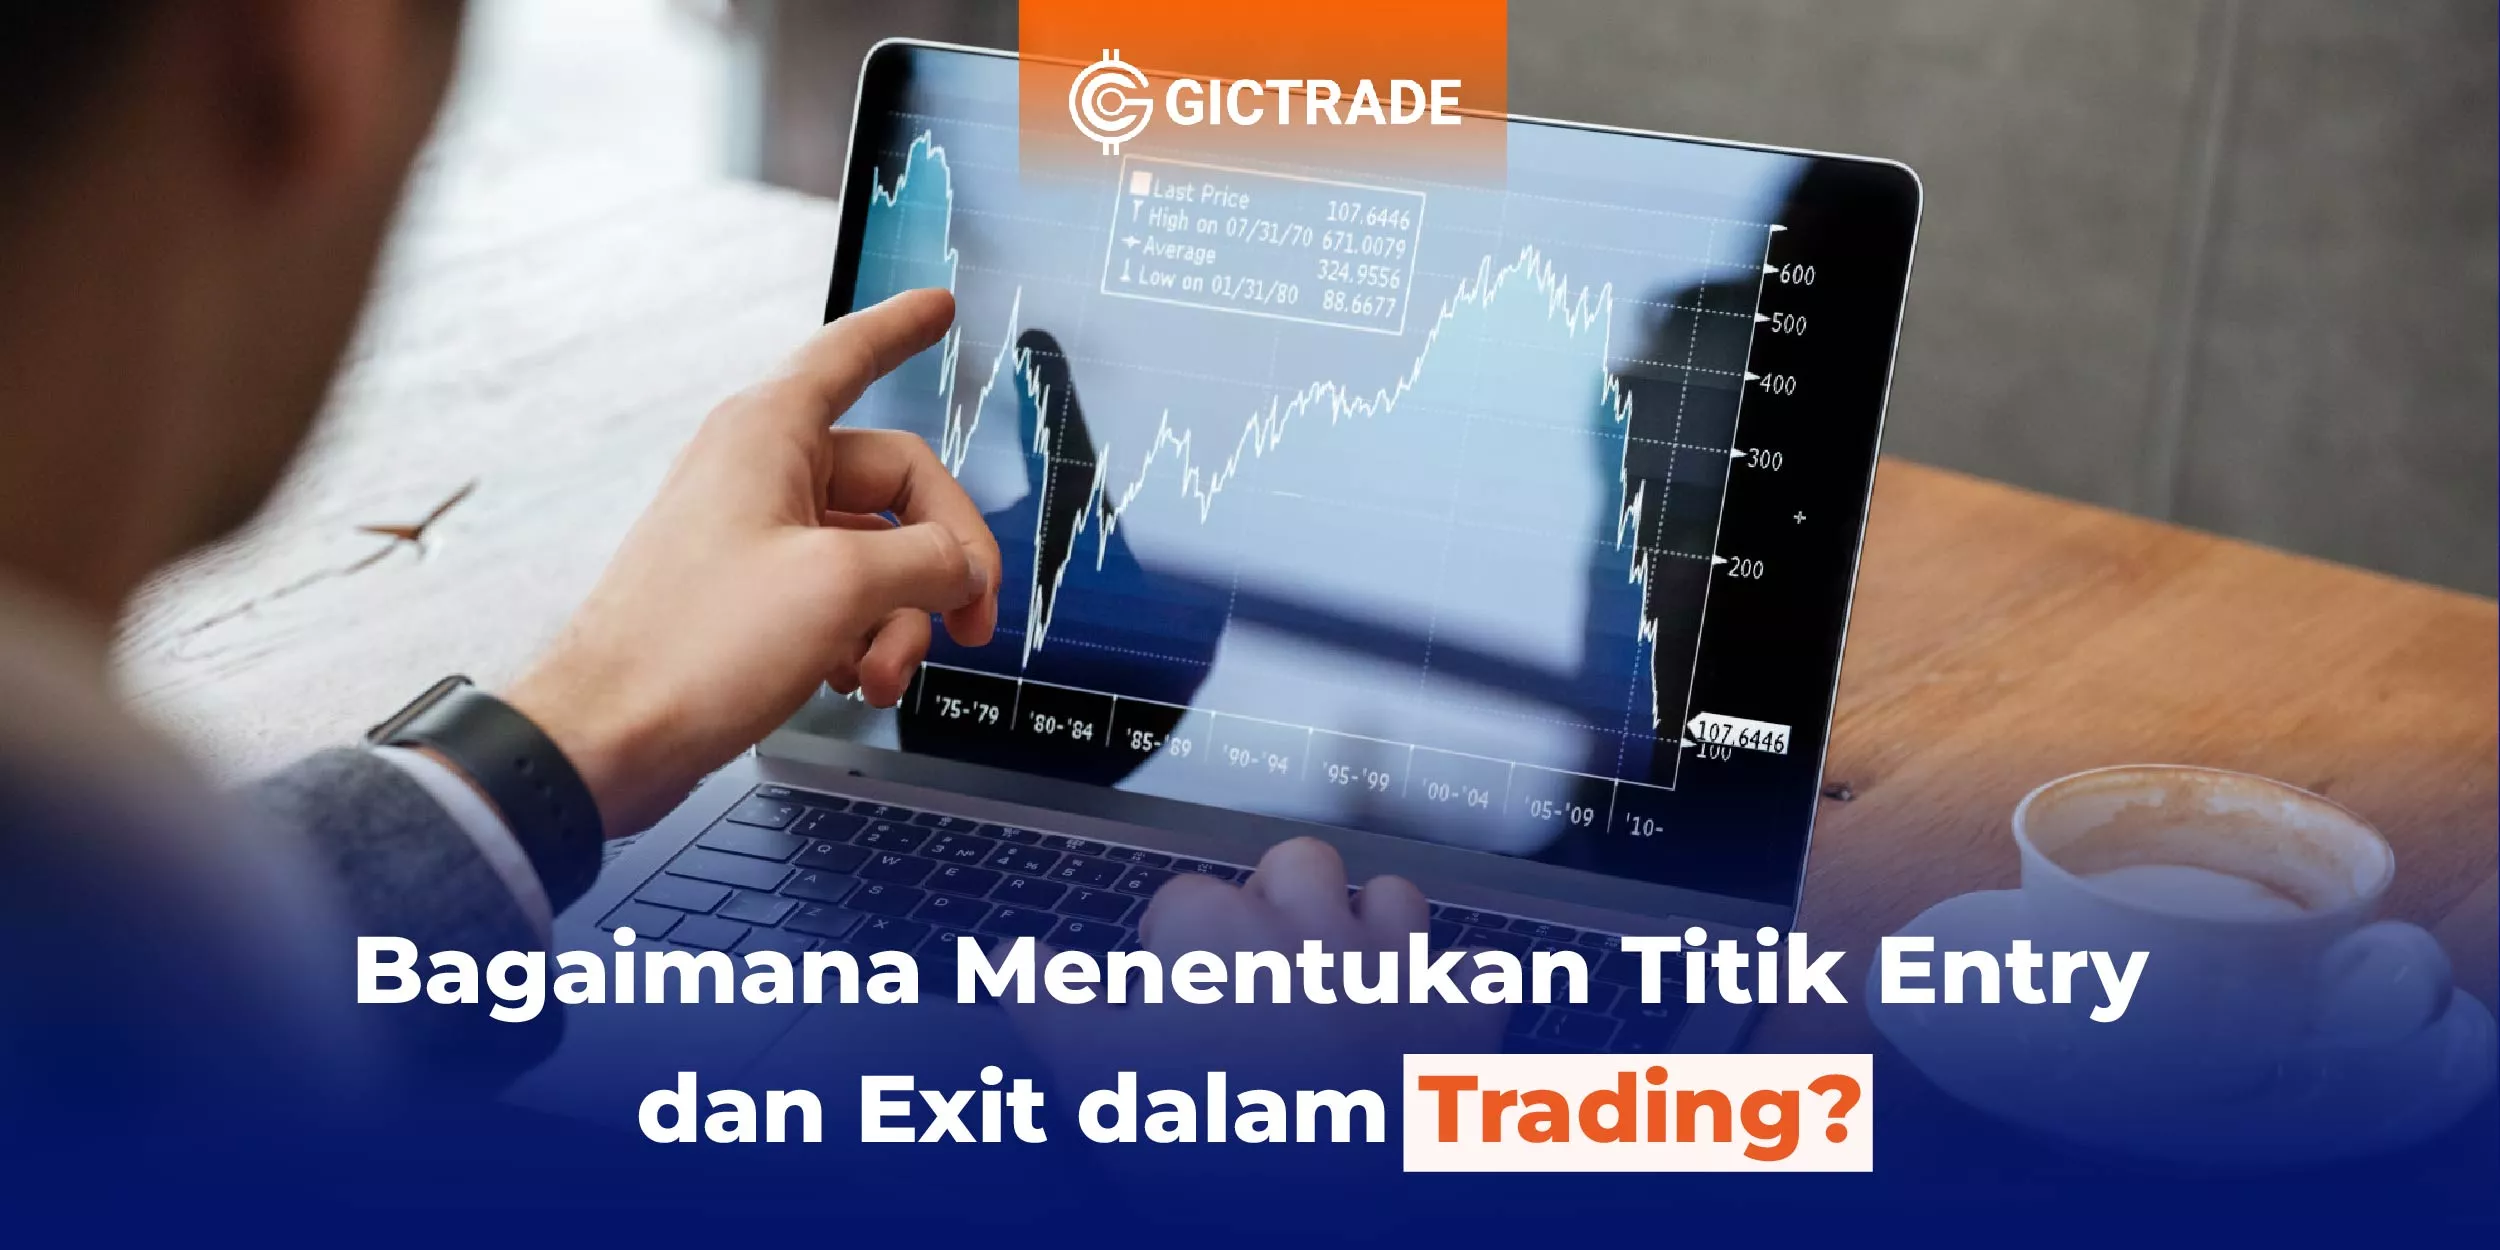 Menentukan Titik Entry dan Exit dalam Trading